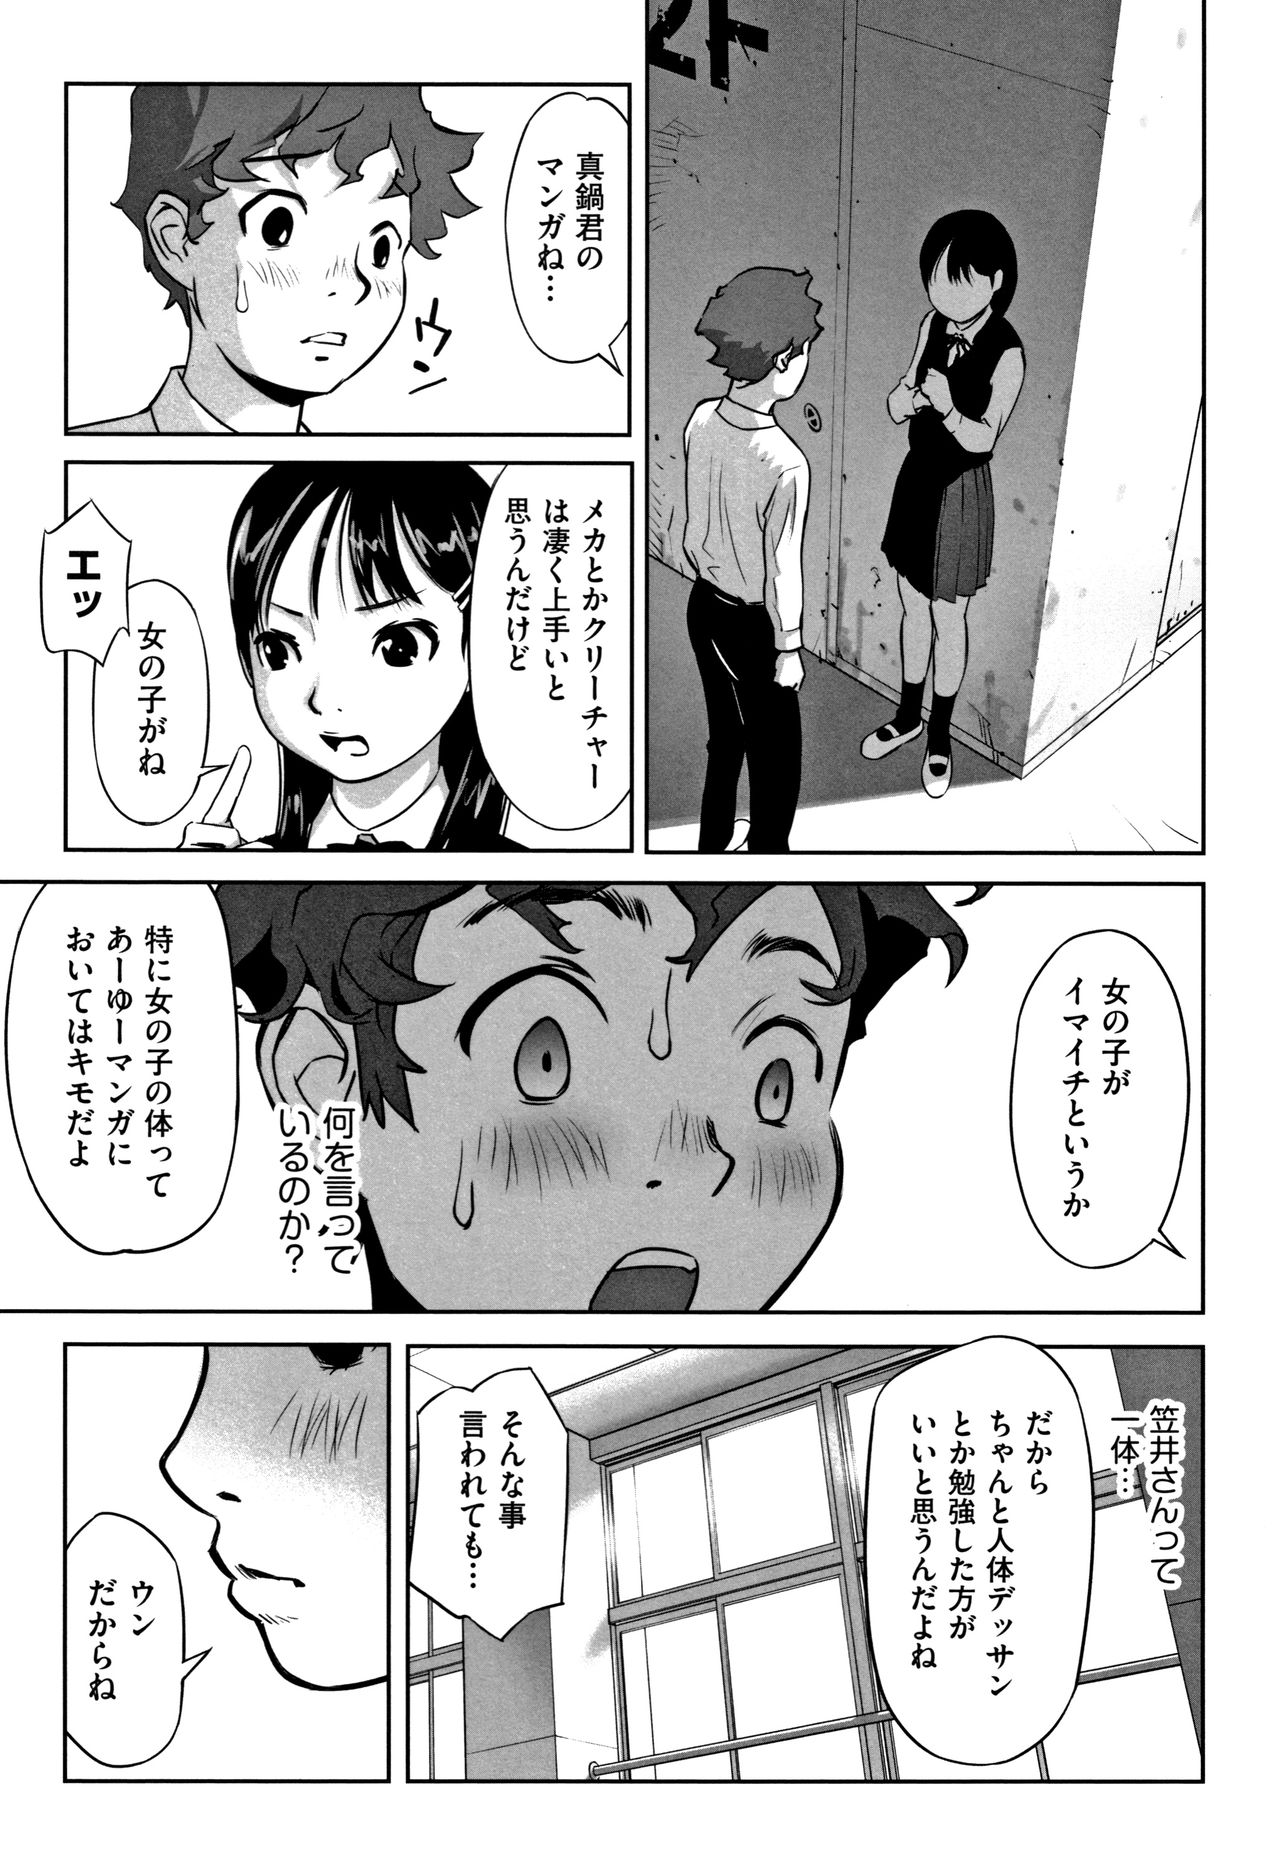 [Hanainu] Otokonoko wa Soko no Kouzou ga Shiritai noda page 12 full